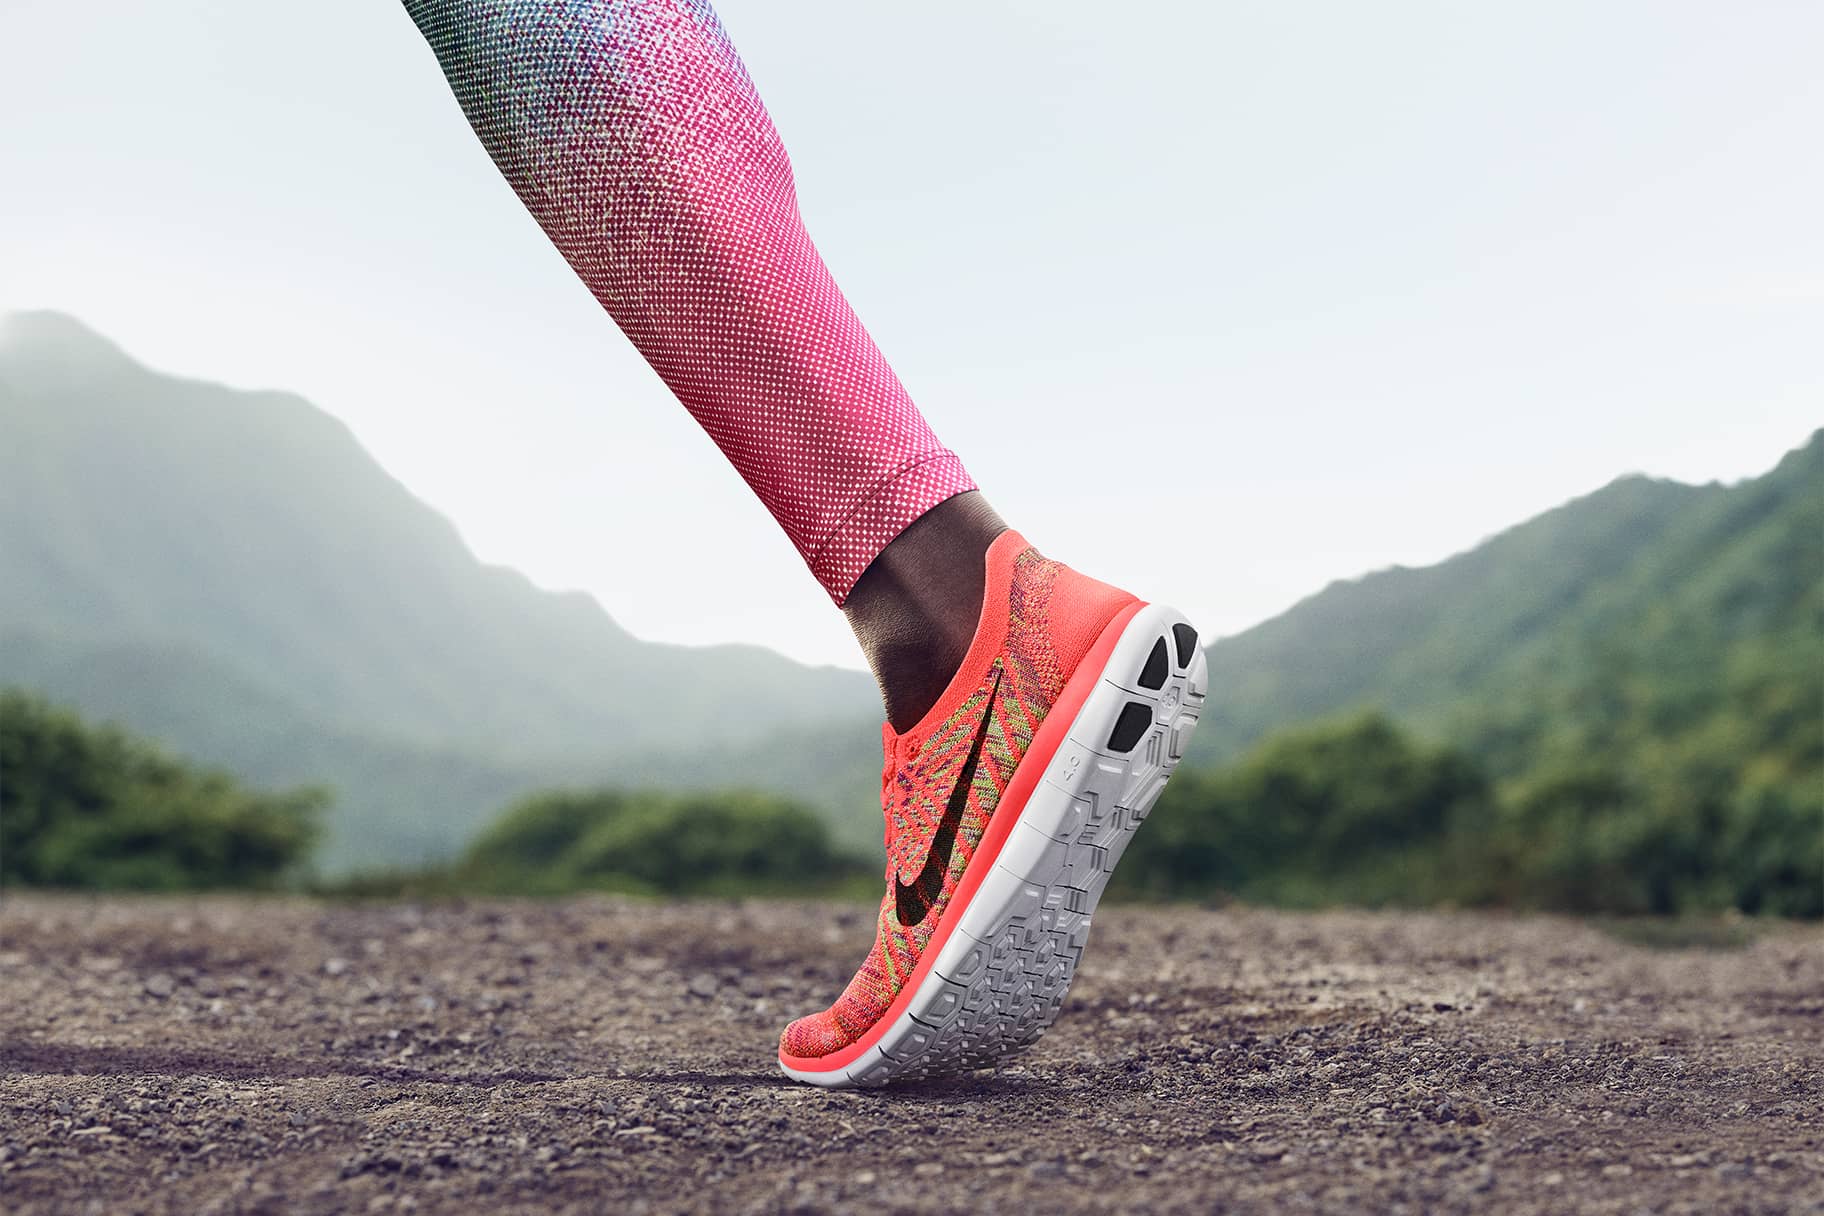 Nike running schuhe - Die preiswertesten Nike running schuhe ausführlich verglichen